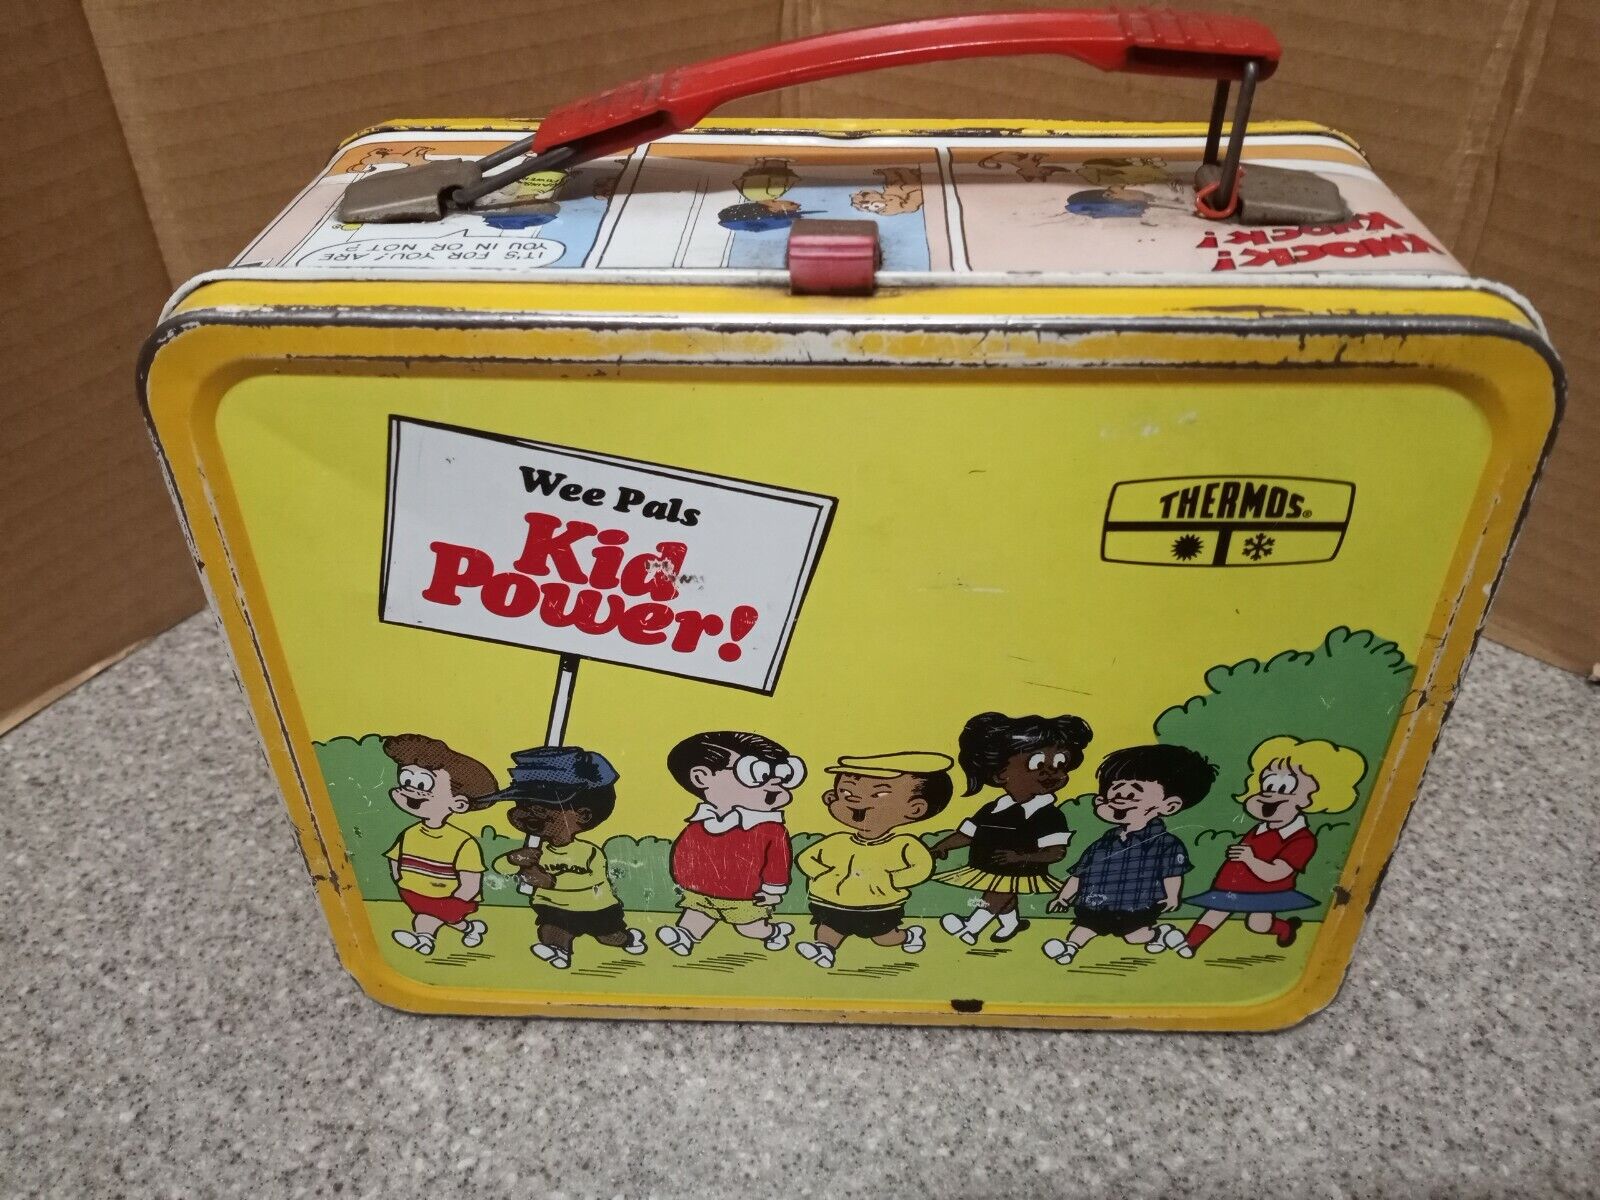 Vintage Metal Lunchbox, WEE PALS Kid Power , 1973 by King-Seeley,